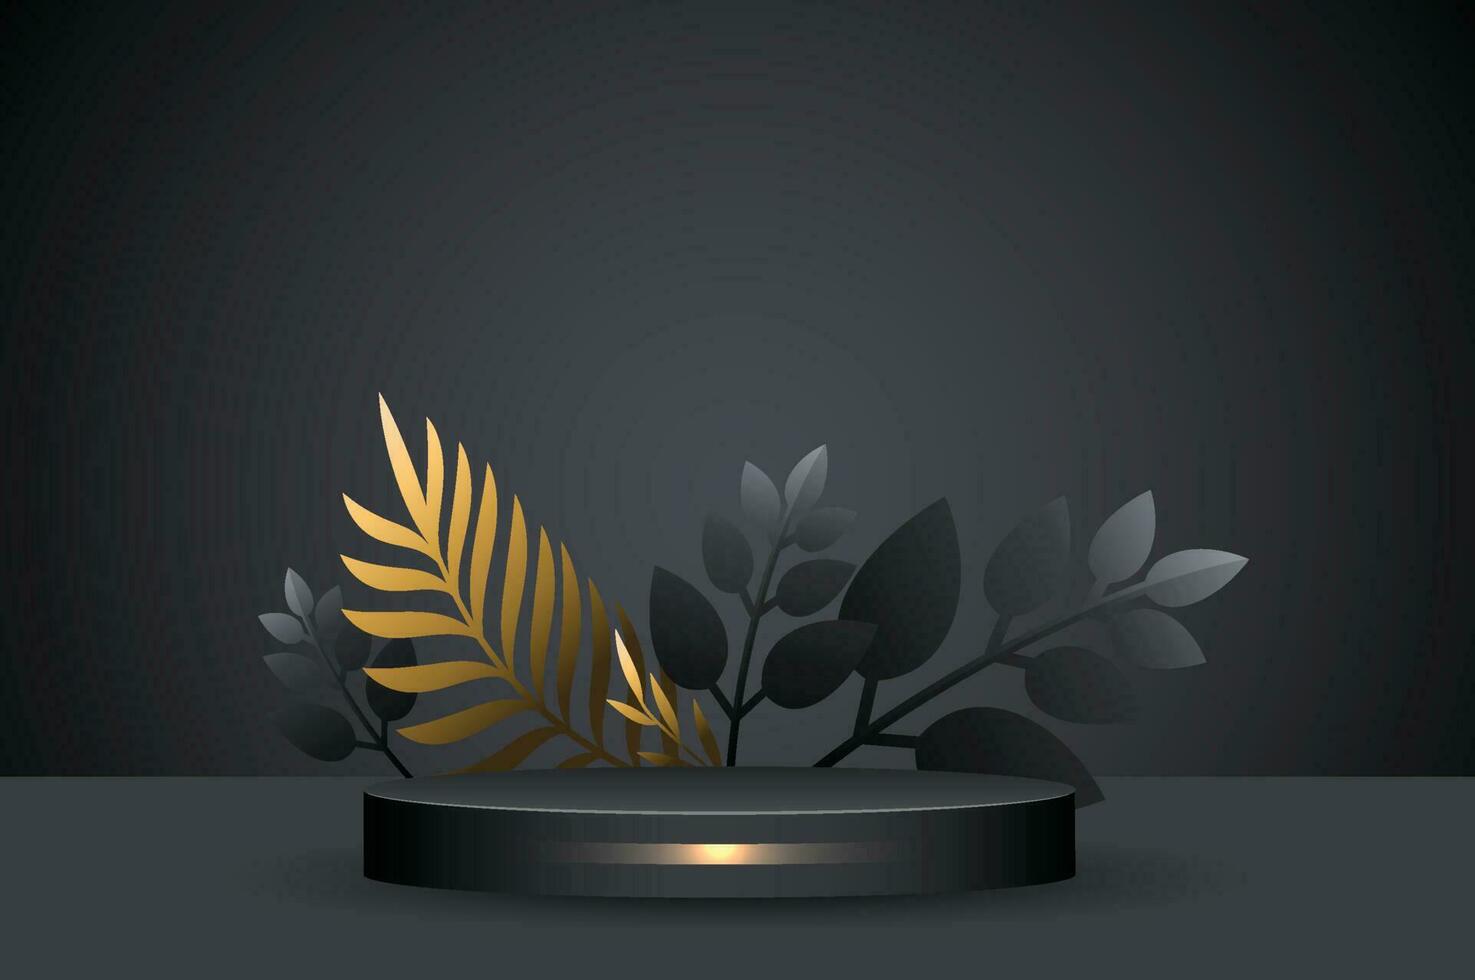 abstrakt golden und schwarz Bühne Podium - - Luxus modern Plattform zum Produkt Anzeige Werbung mit Kreis Ringe und Blätter Hintergrund vektor